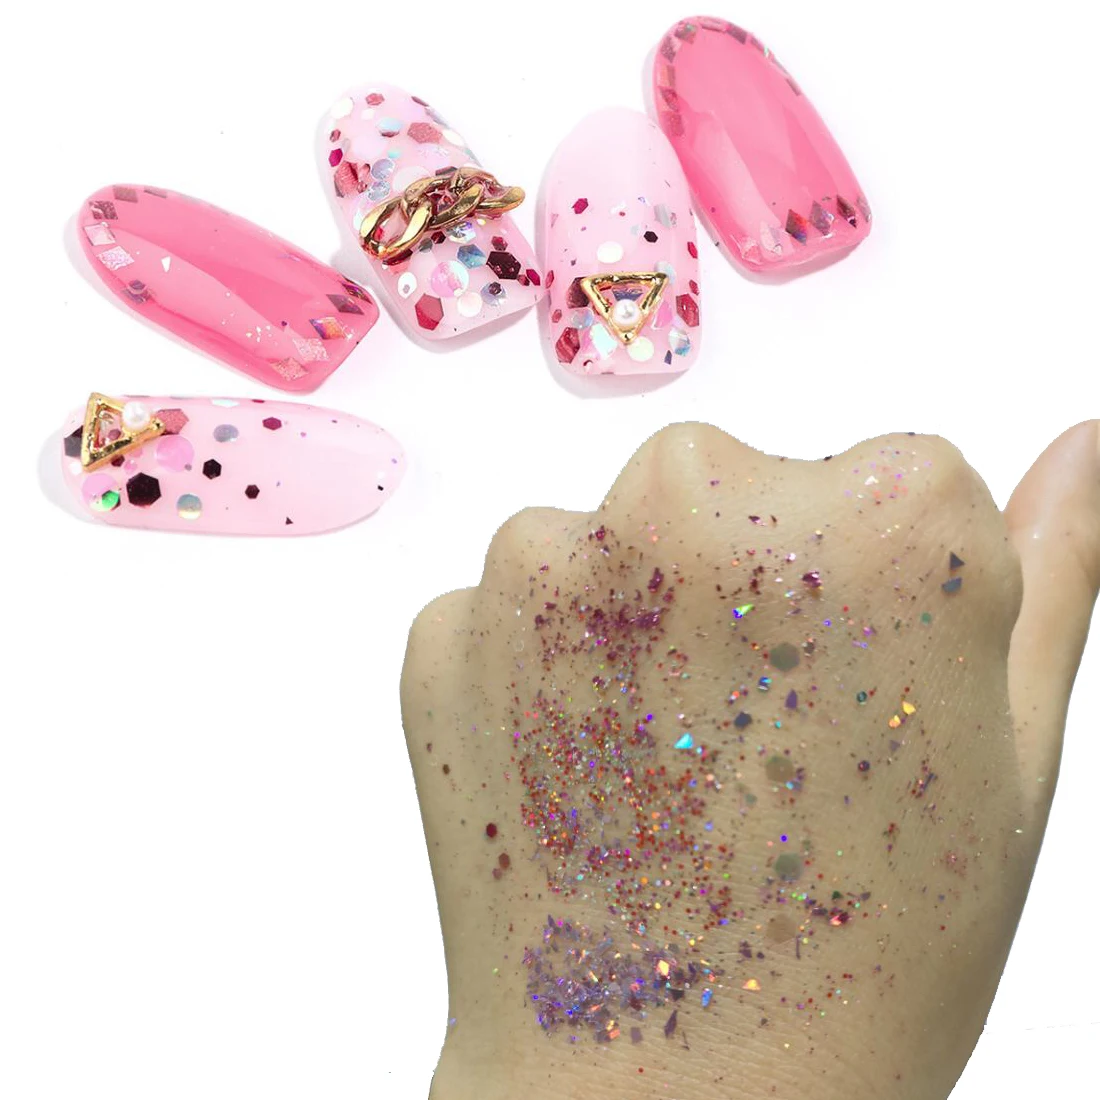 Addfavor 8 шт. голографические пайетки для ногтей хлопья блестящая розовая Золотая фольга для ногтей Наклейка блестящая пудра для украшения ногтей маникюр